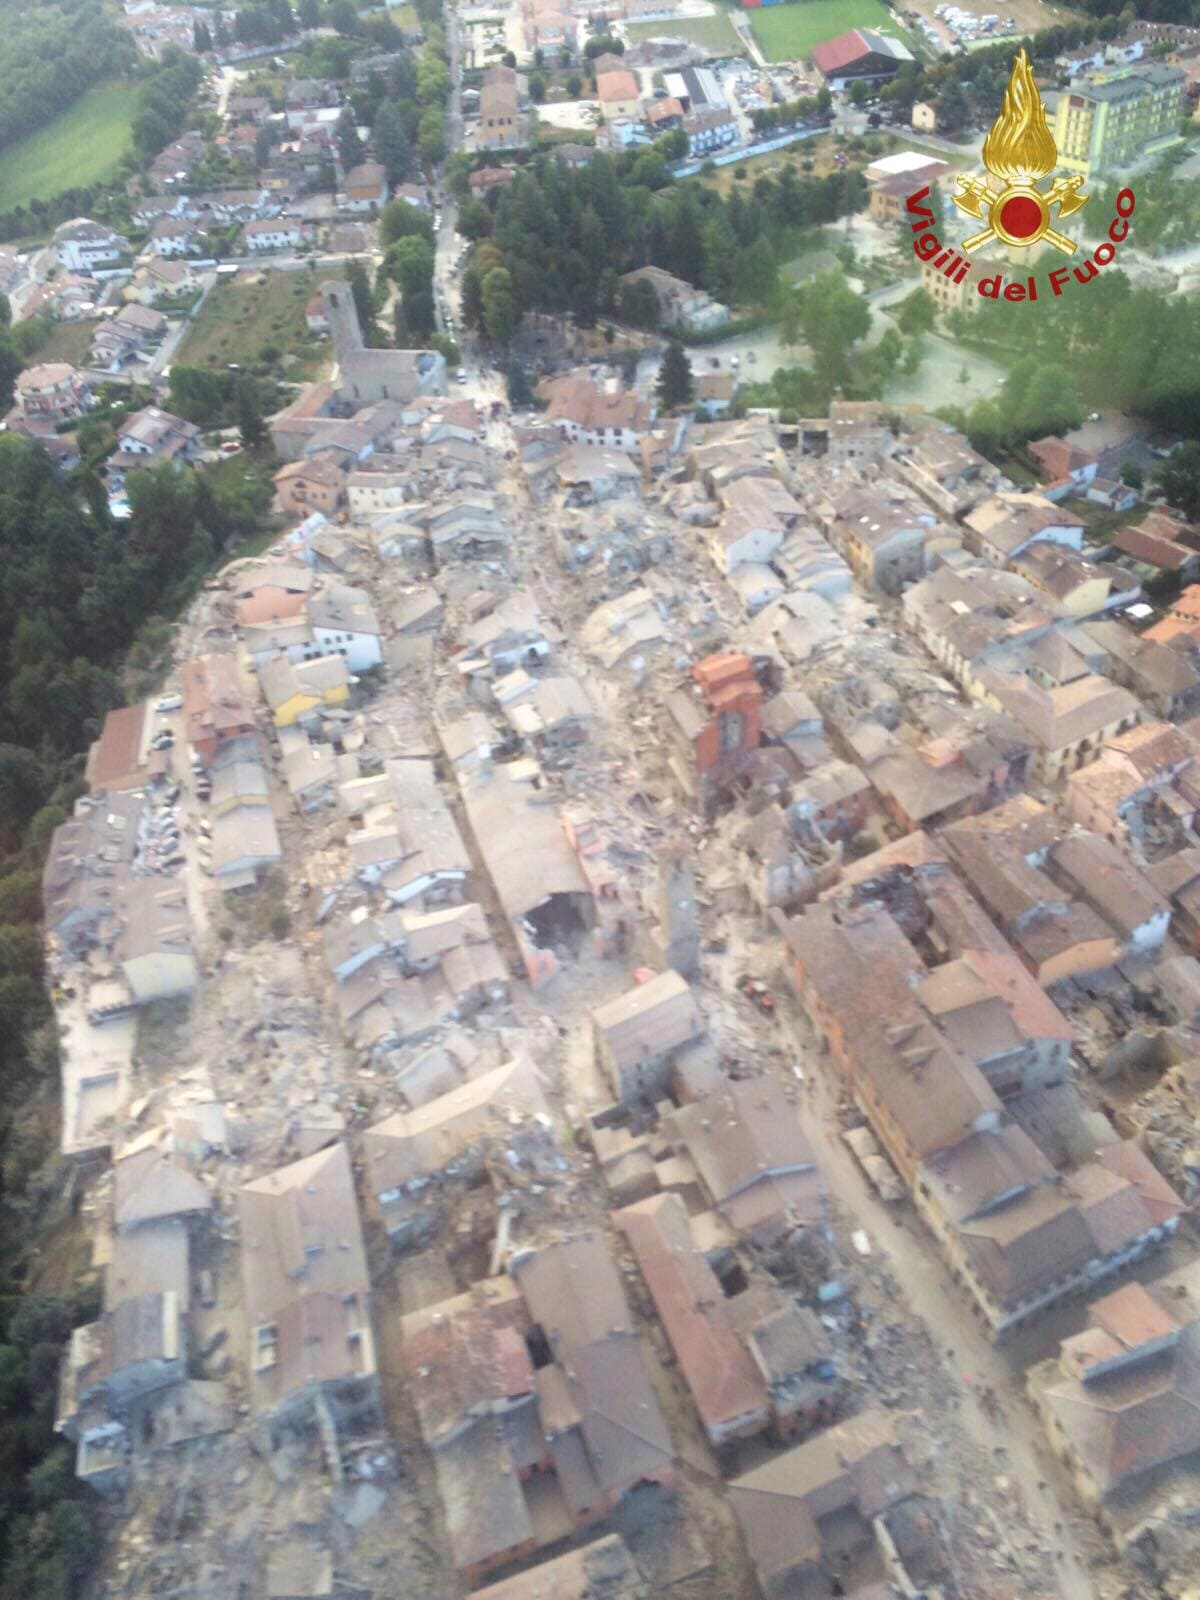 Teruglezen - Italië getroffen door grote aardbeving